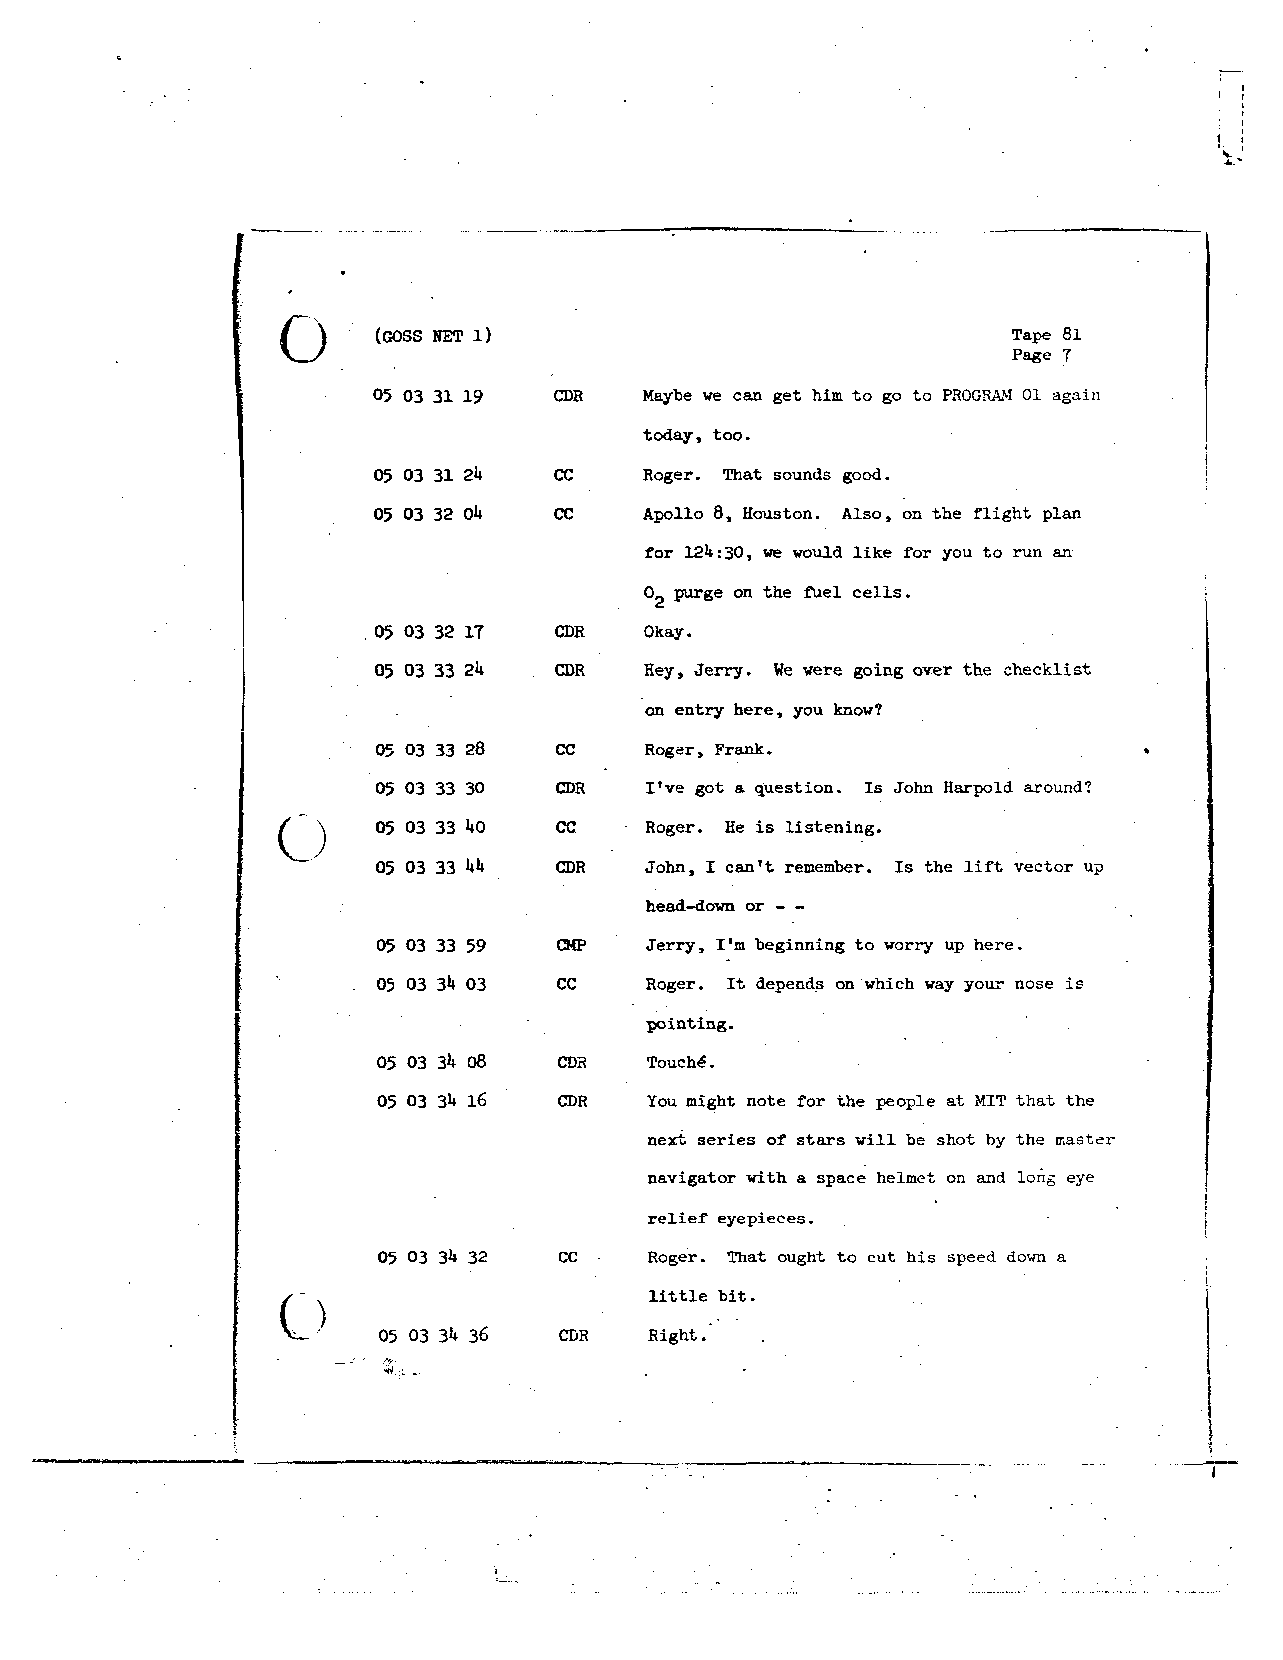 Page 675 of Apollo 8’s original transcript